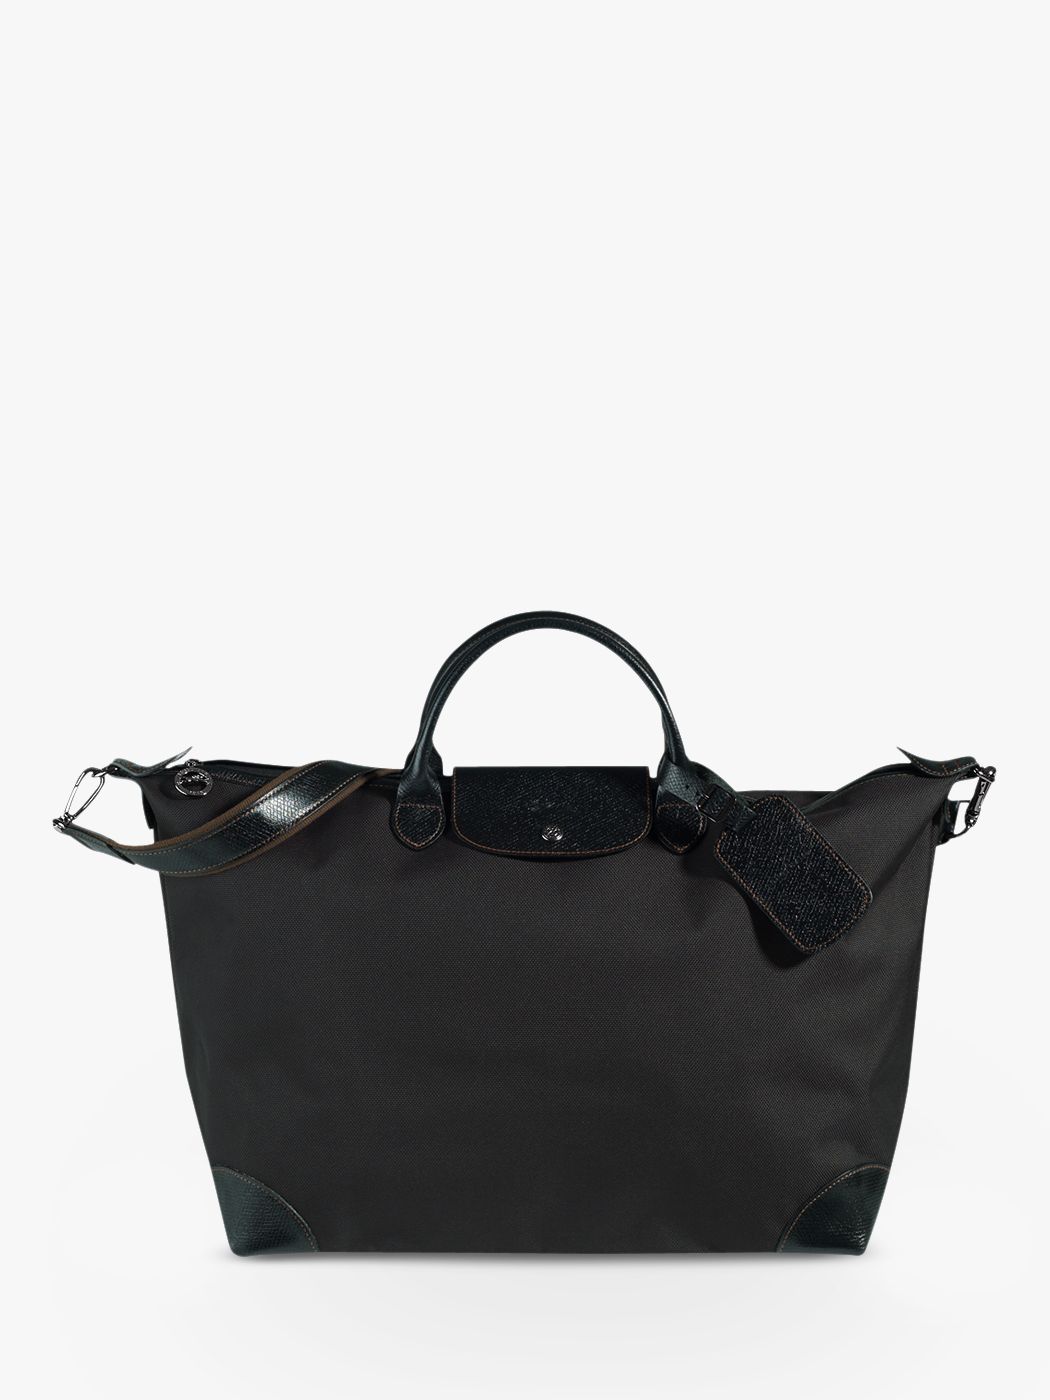 Longchamp Boxford Large Travel Bag, Black at John Lewis & Partners